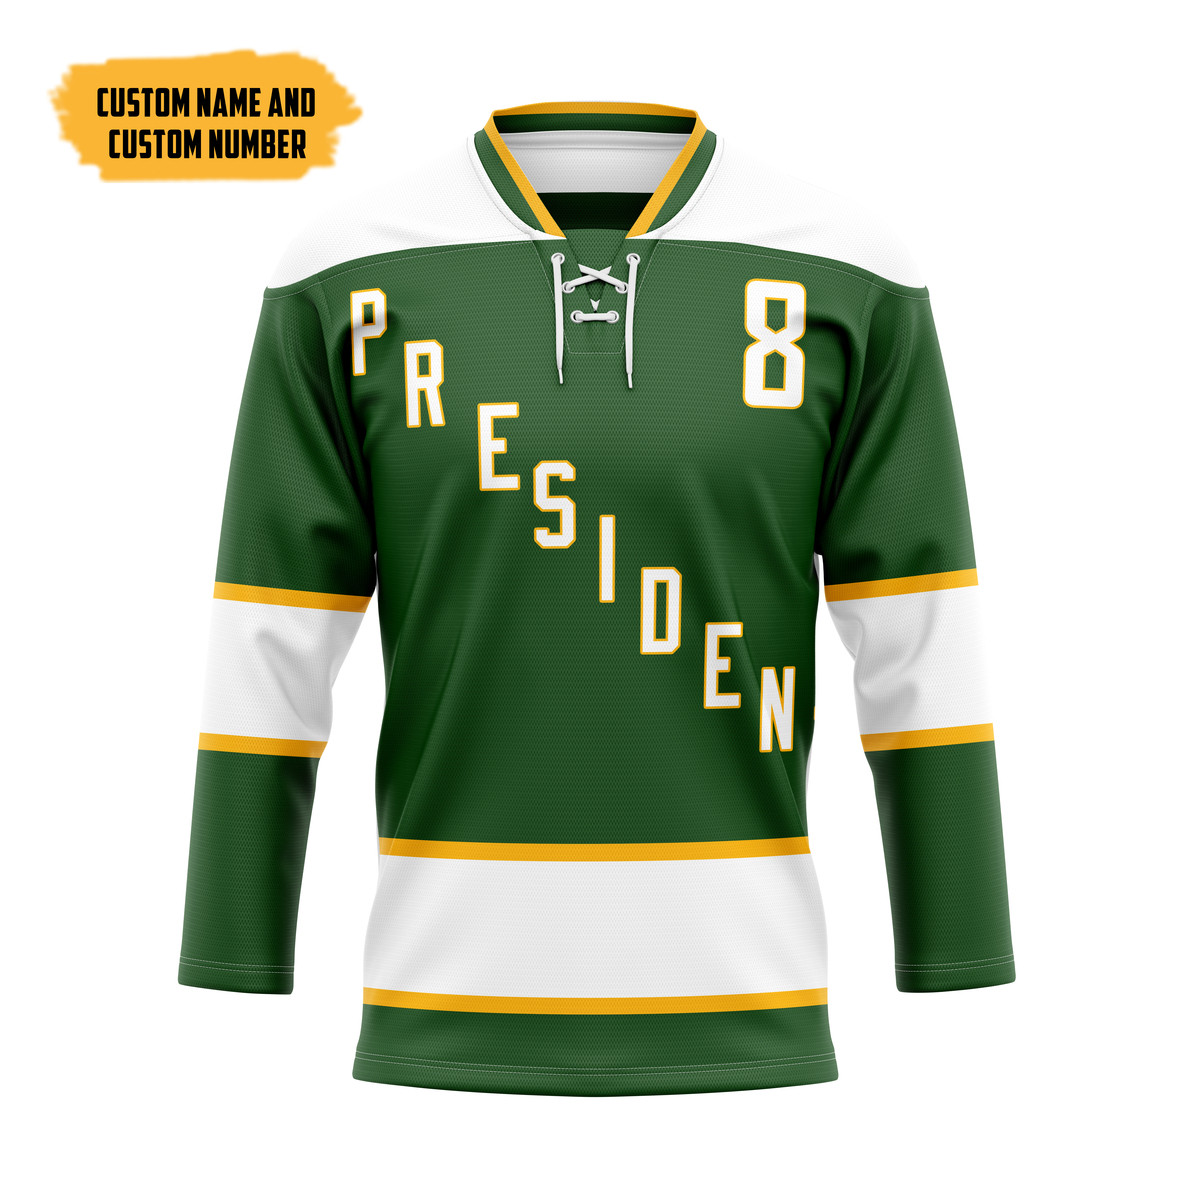 The Best Hockey Jersey Shirt 106